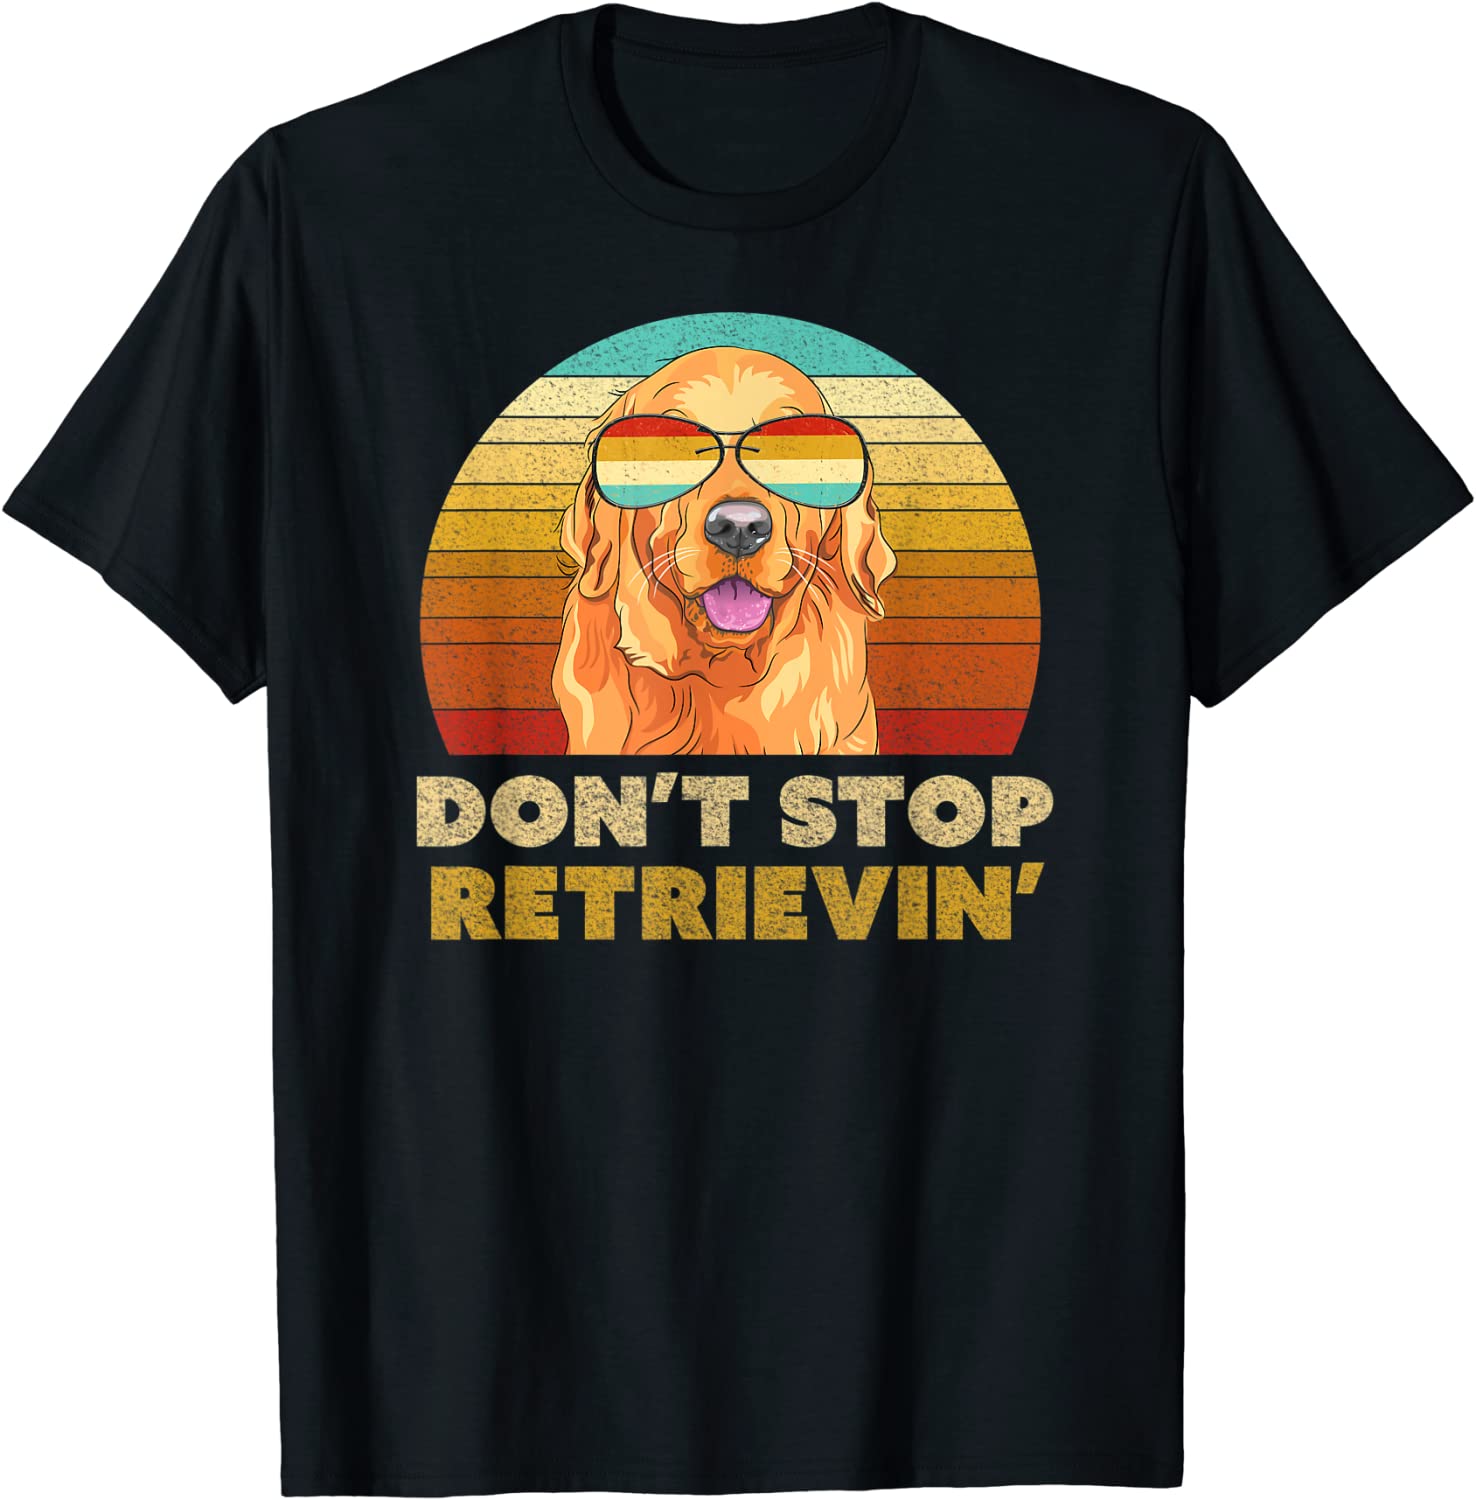 Don't Stop Retrieving Shirt. Retro Golden Retriever TShirt